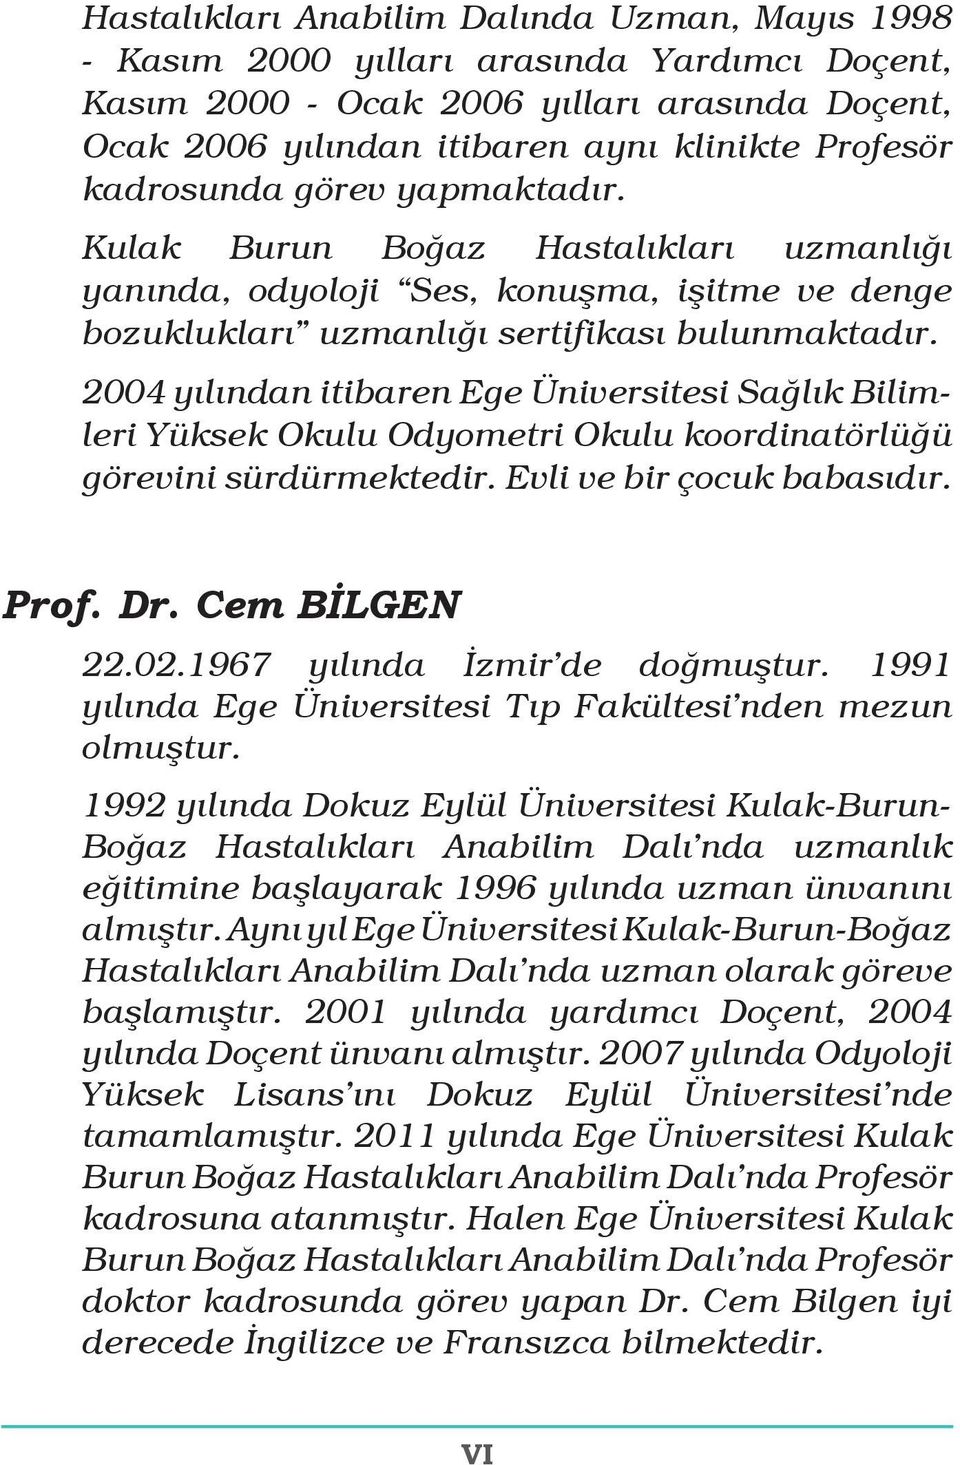 2004 yılından itibaren Ege Üniversitesi Sağlık Bilimleri Yüksek Okulu Odyometri Okulu koordinatörlüğü görevini sürdürmektedir. Evli ve bir çocuk babasıdır. Prof. Dr. Cem BİLGEN 22.02.